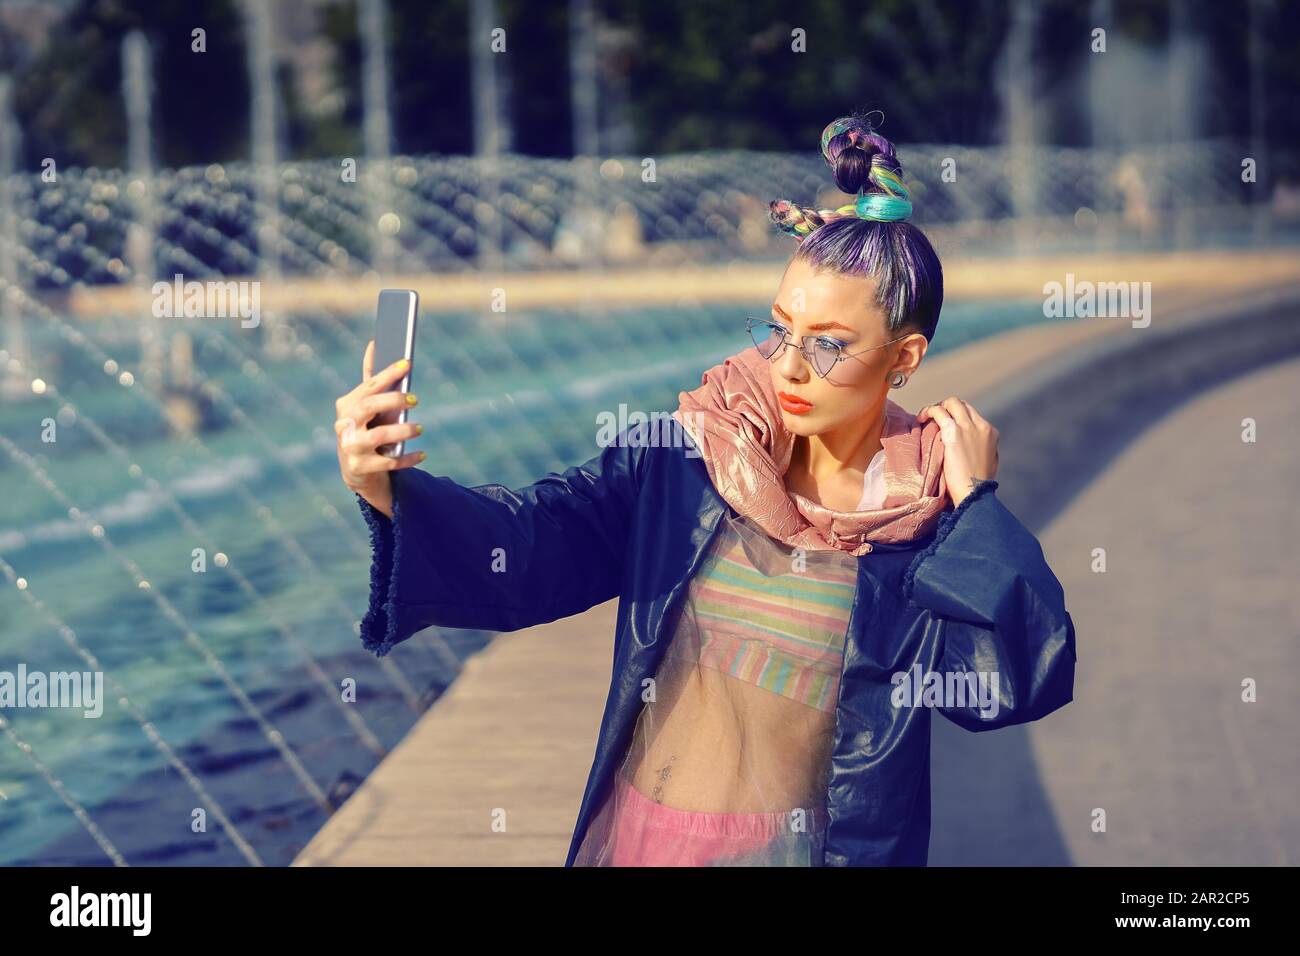 Cool funky hipster jeune fille influenceur de mode avec des cheveux fous et style avant-garde prenant selfie sur la rue Banque D'Images